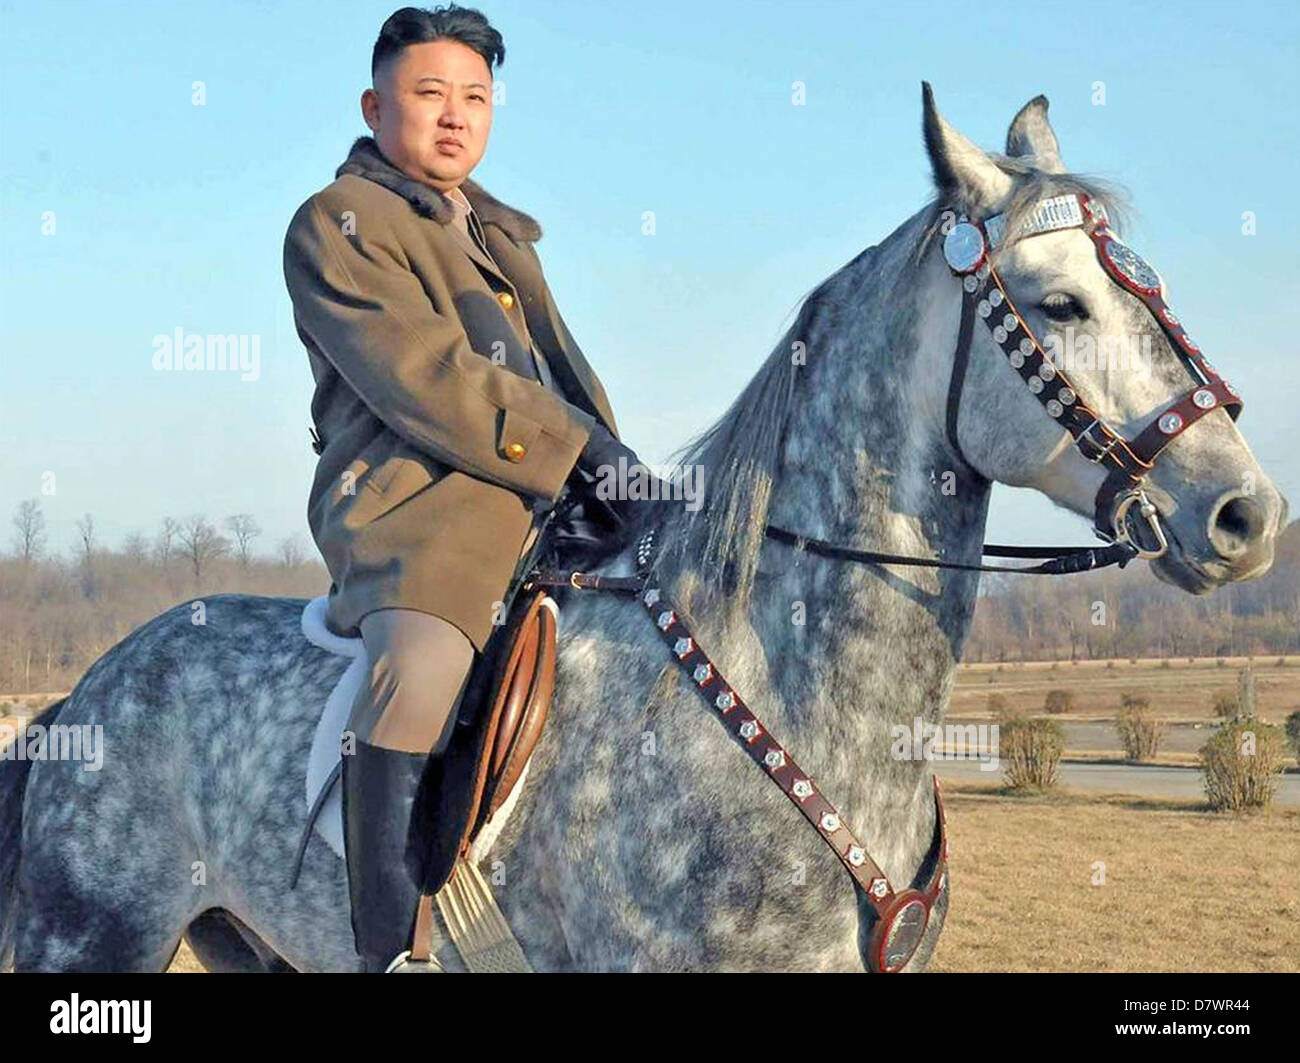 KIM Jong-un dirigeant suprême de la Corée du Nord en 2013 Banque D'Images